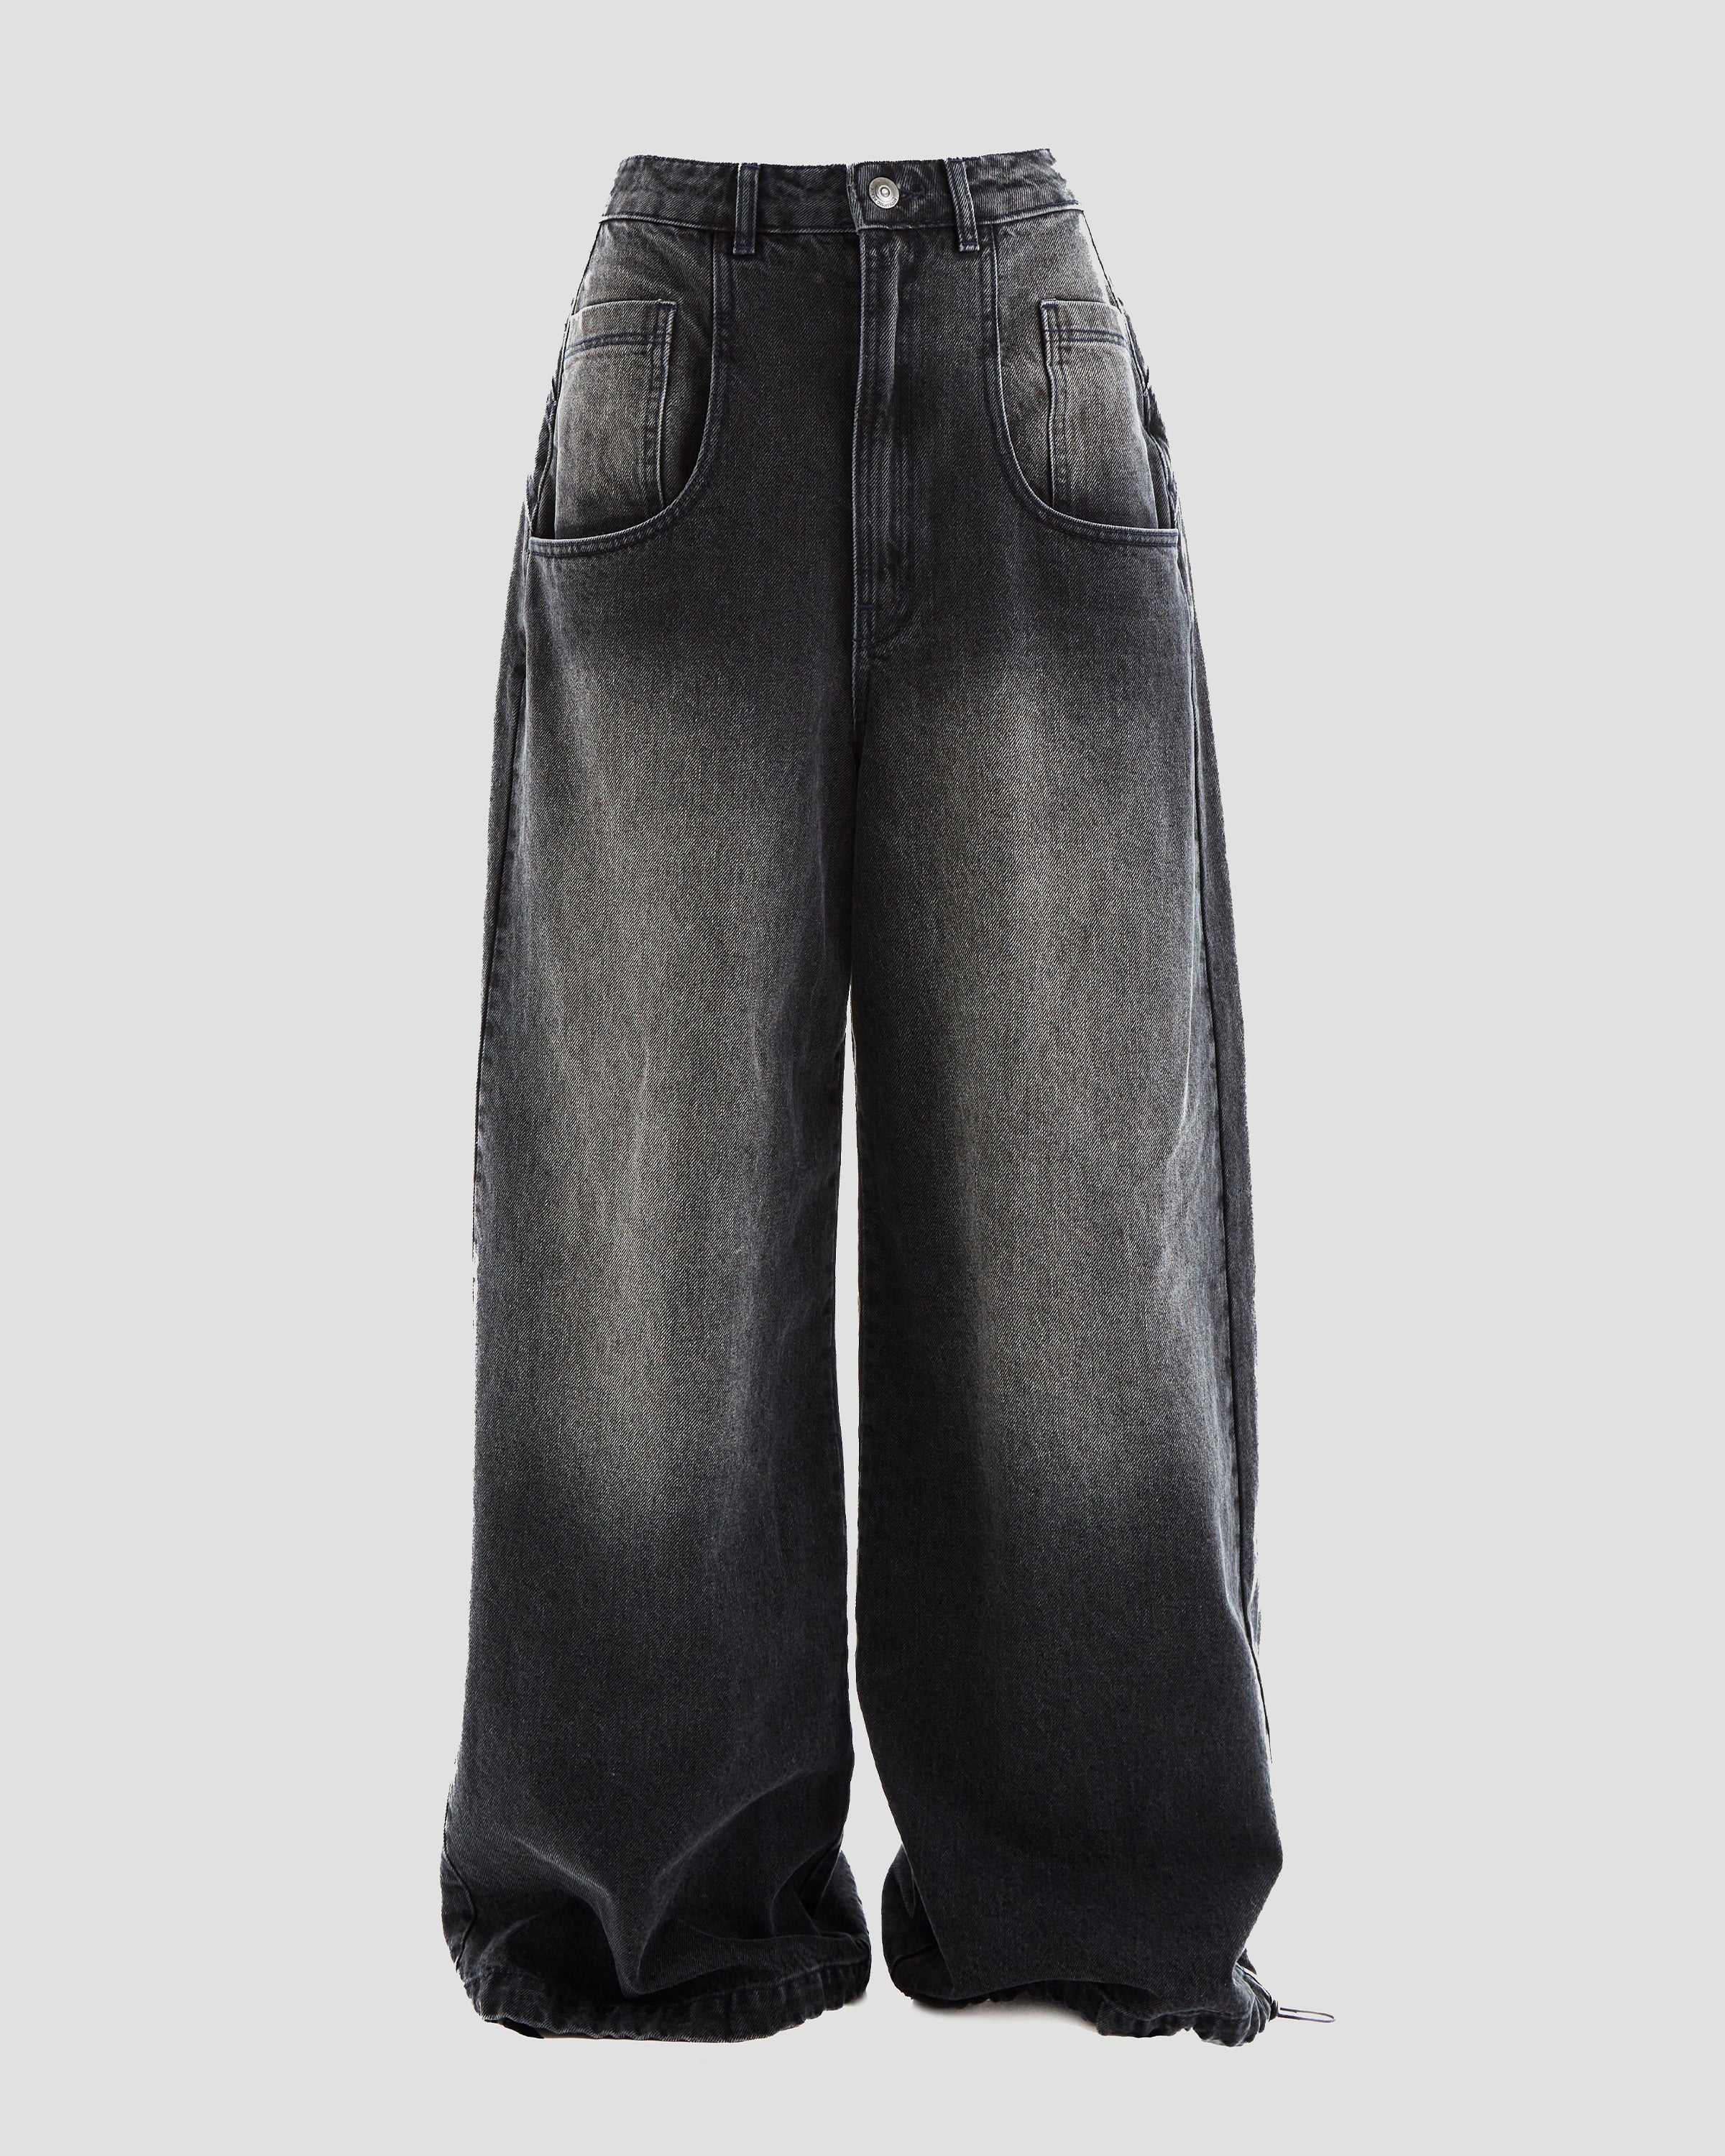 Phat Super Wide Leg Jeans in Dark Grey Wash